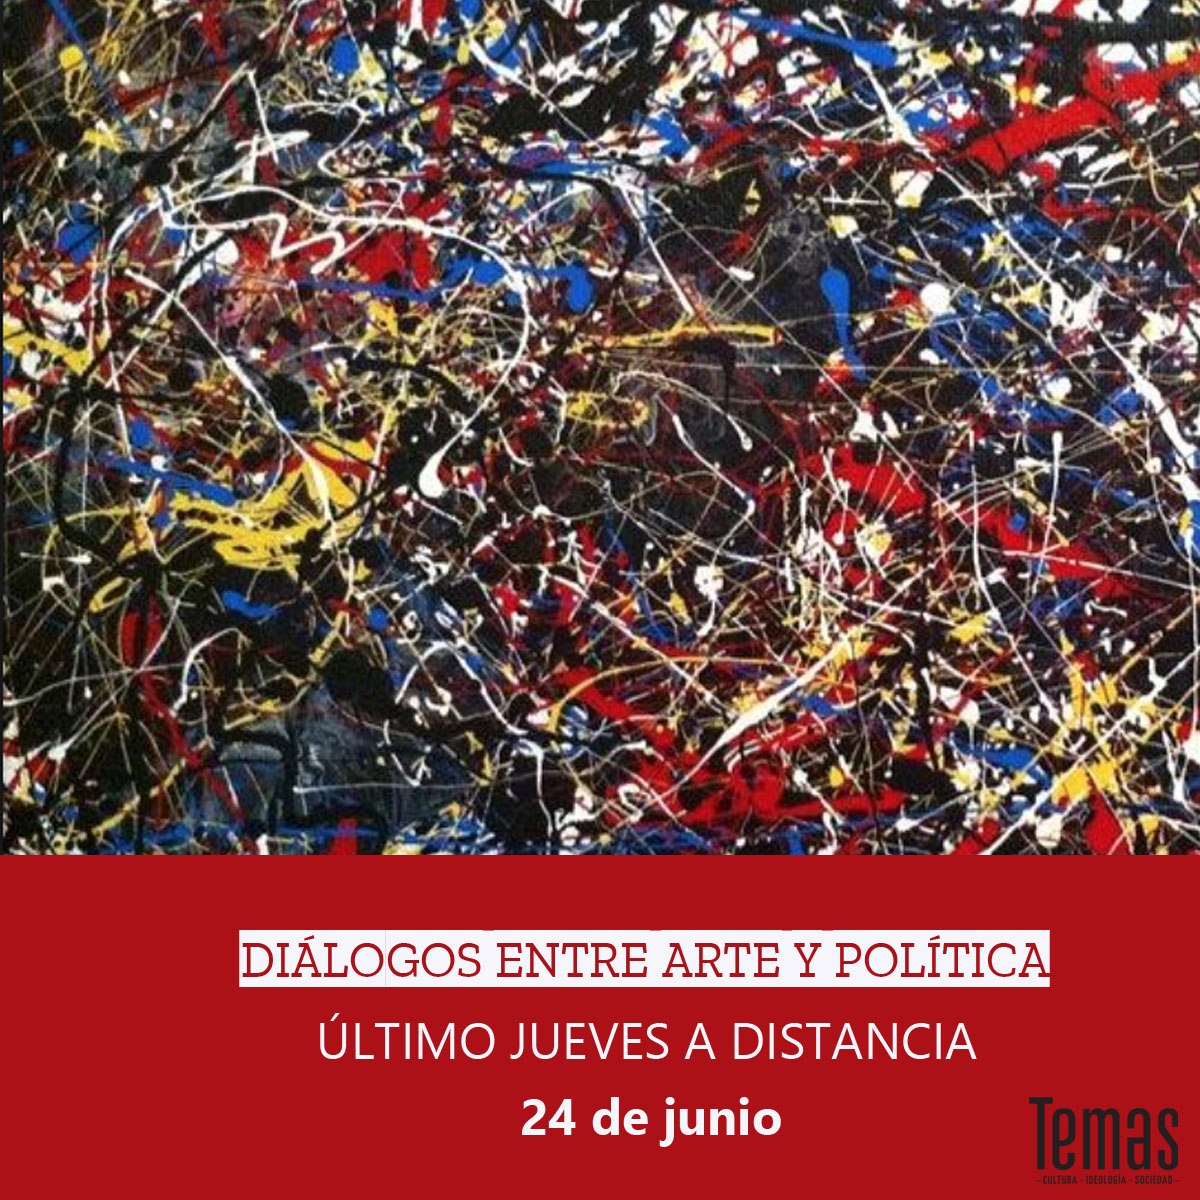 24-de-junio-ultimo-jueves-dedicado-a-dialogos-entre-arte-y-politica